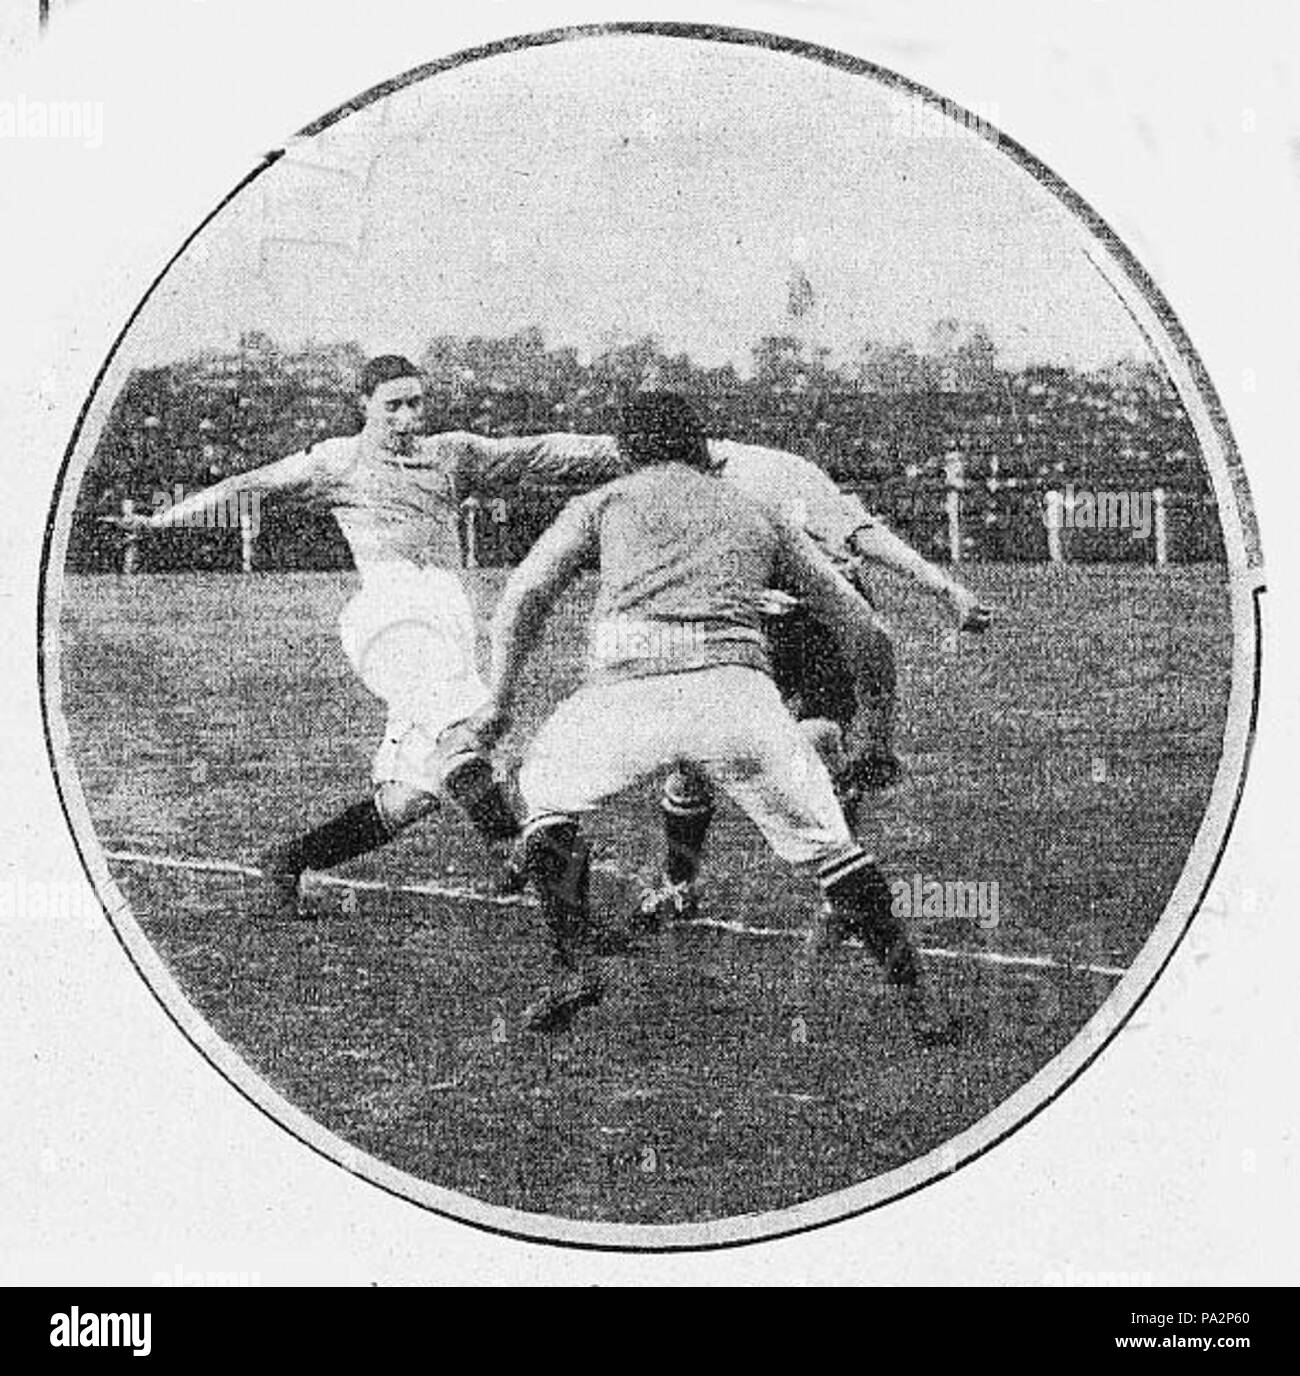 631 Everton v Tottenham arg 1909 Foto Stock